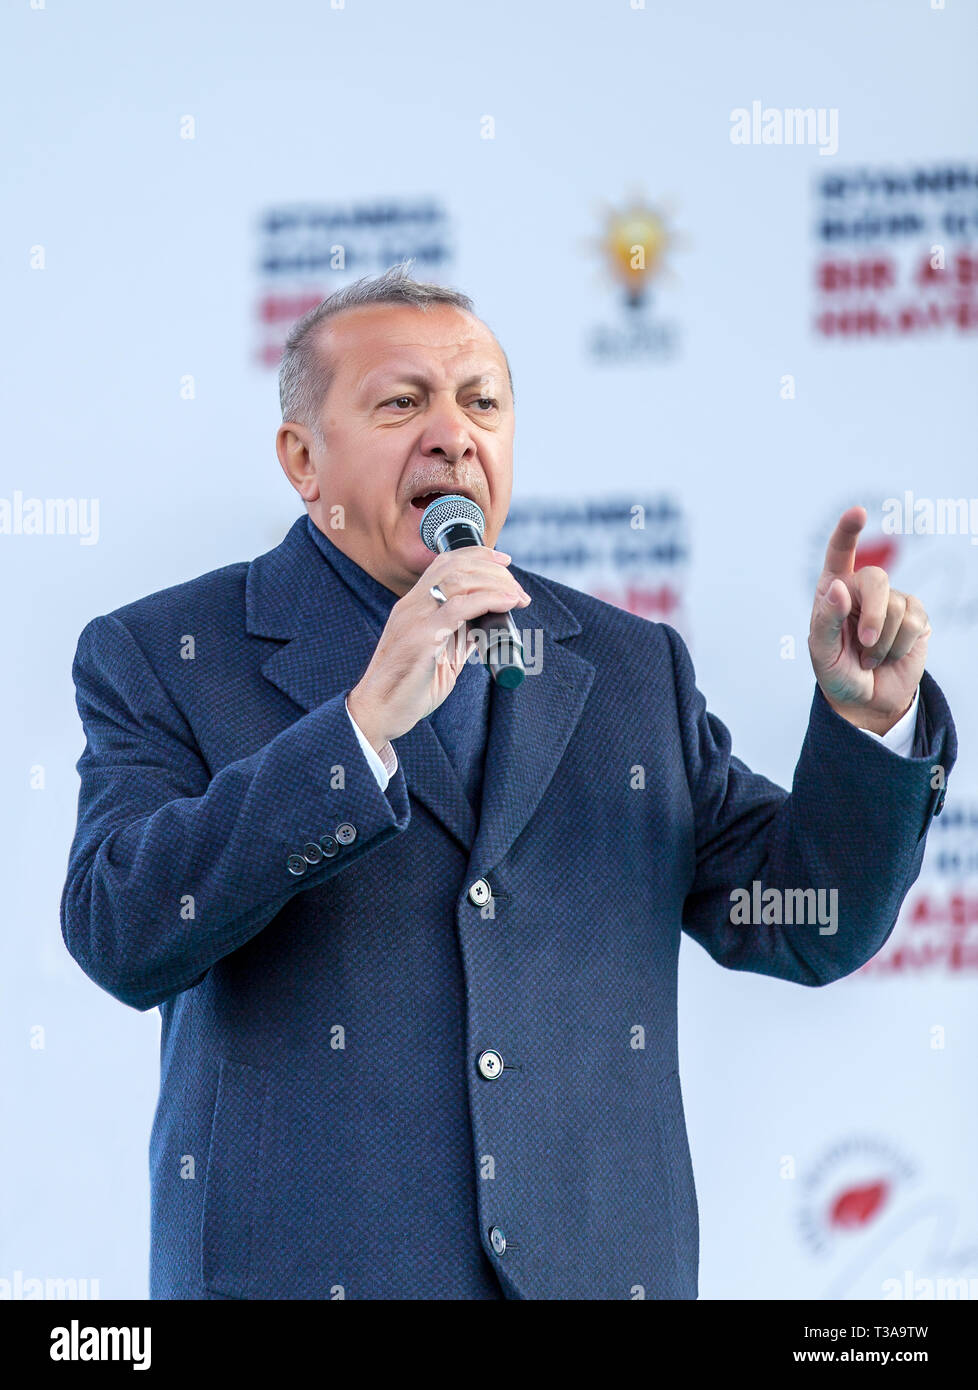 Le Président turc, Recep Tayyip Erdogan, s'exprime à l'Assemblée électorale locale Mars 31, 30 mars 2019 Bagcilar, Istanbul - Turquie Banque D'Images